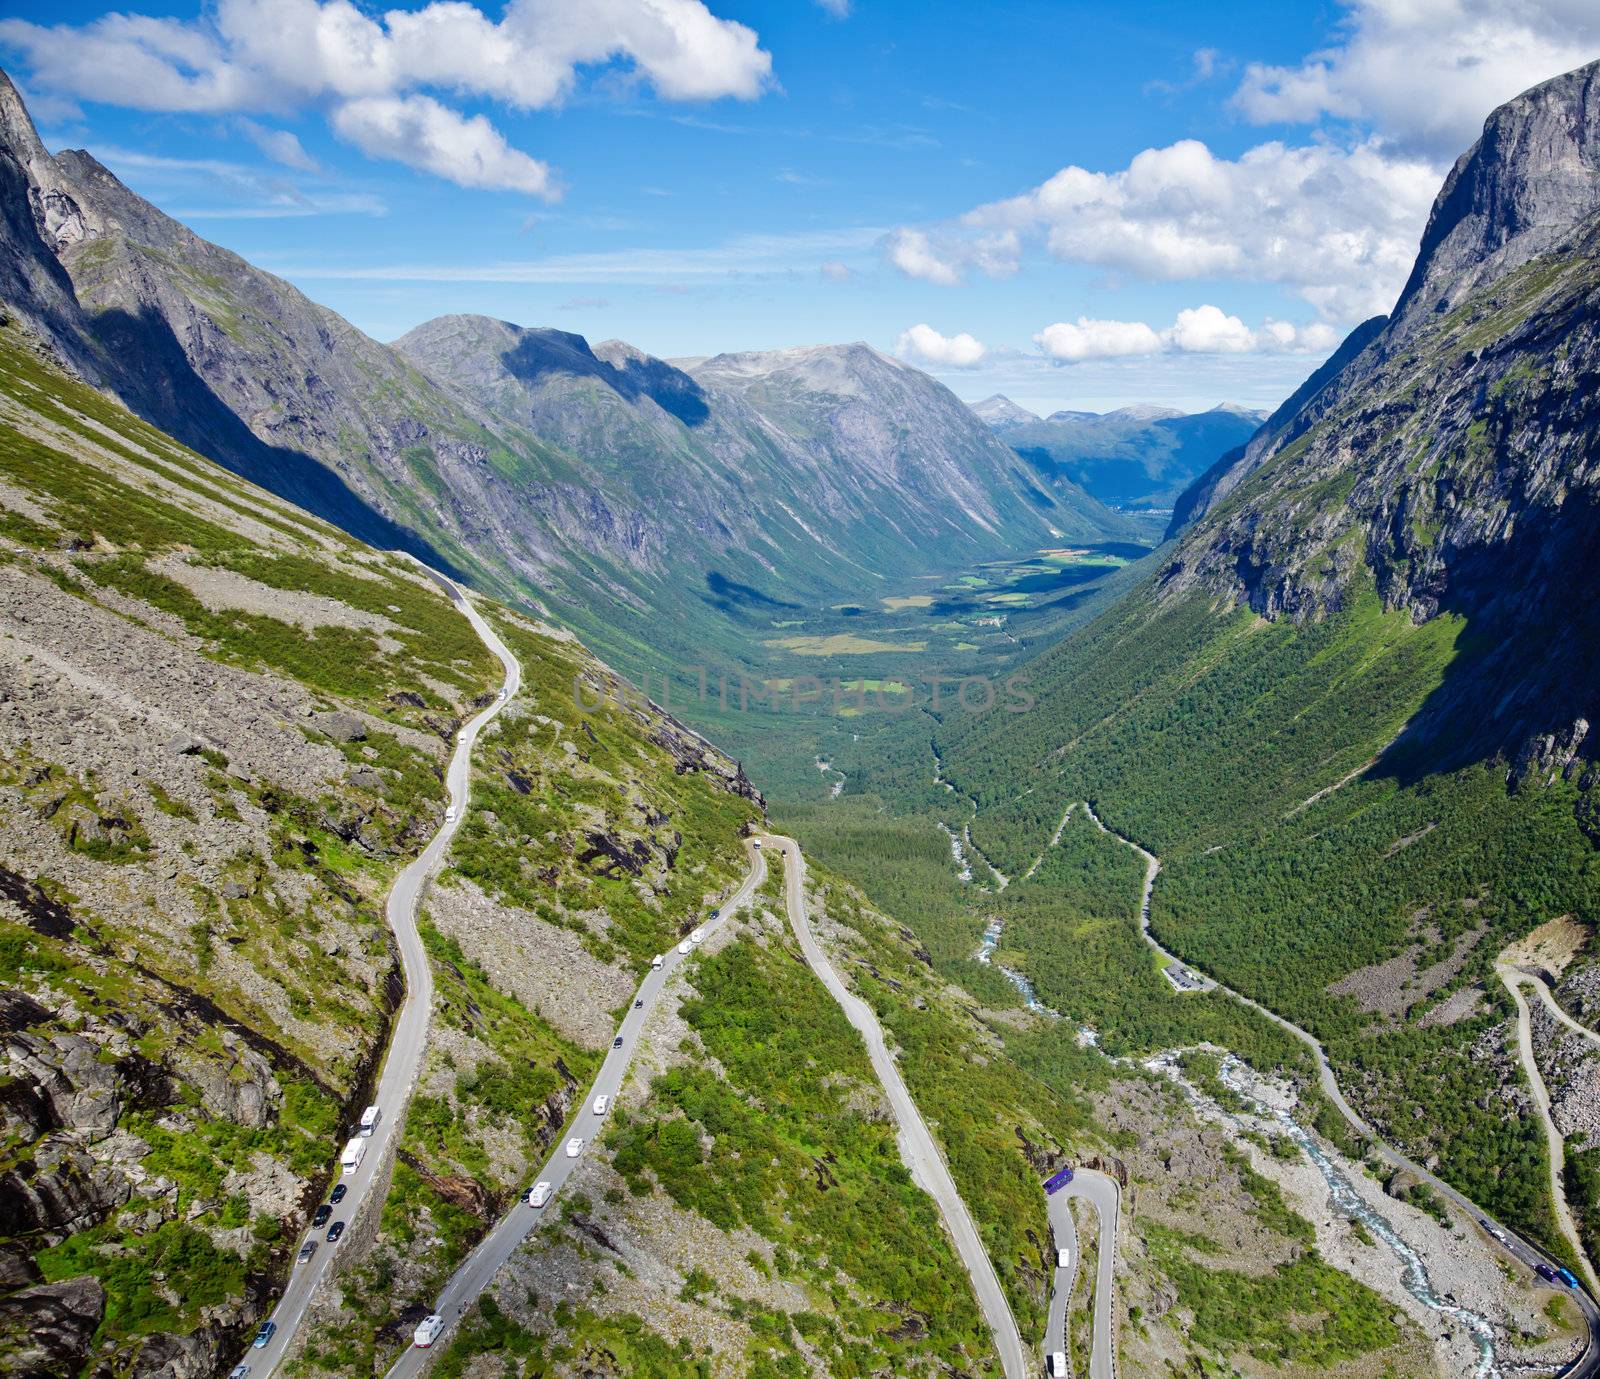 Winding mountain road called Trollstigen (Troll's Ladder) in Norway